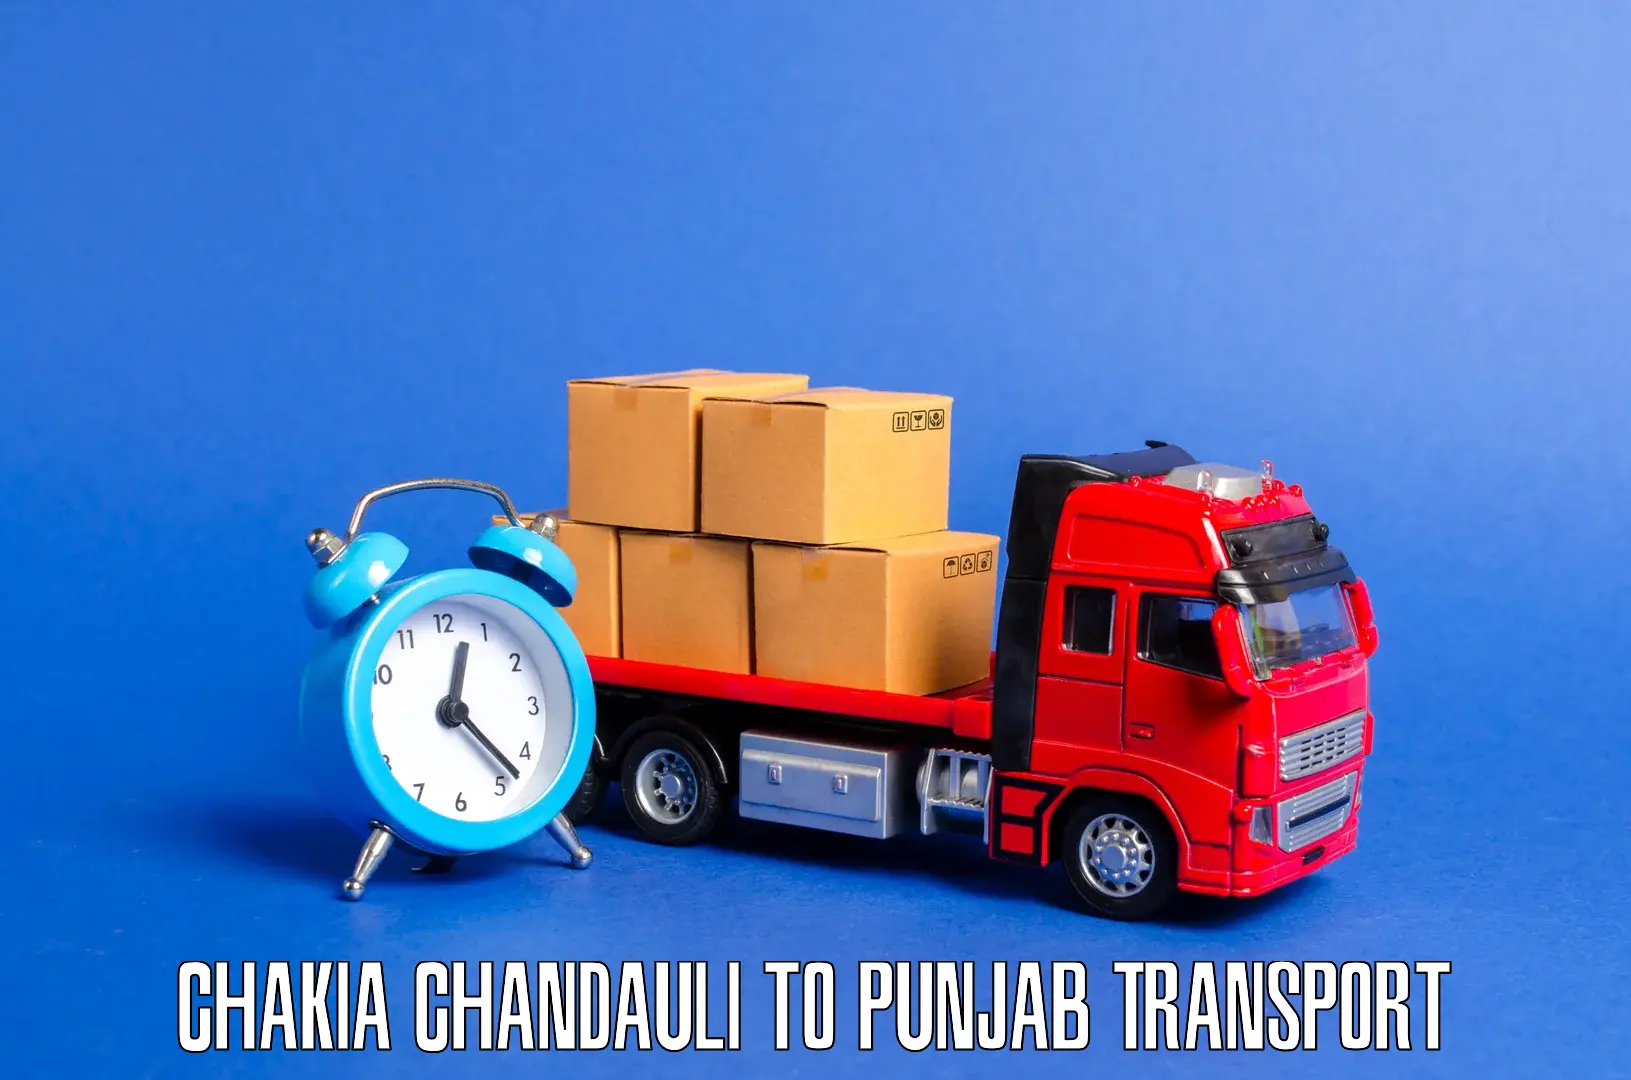 Daily transport service Chakia Chandauli to Muktsar